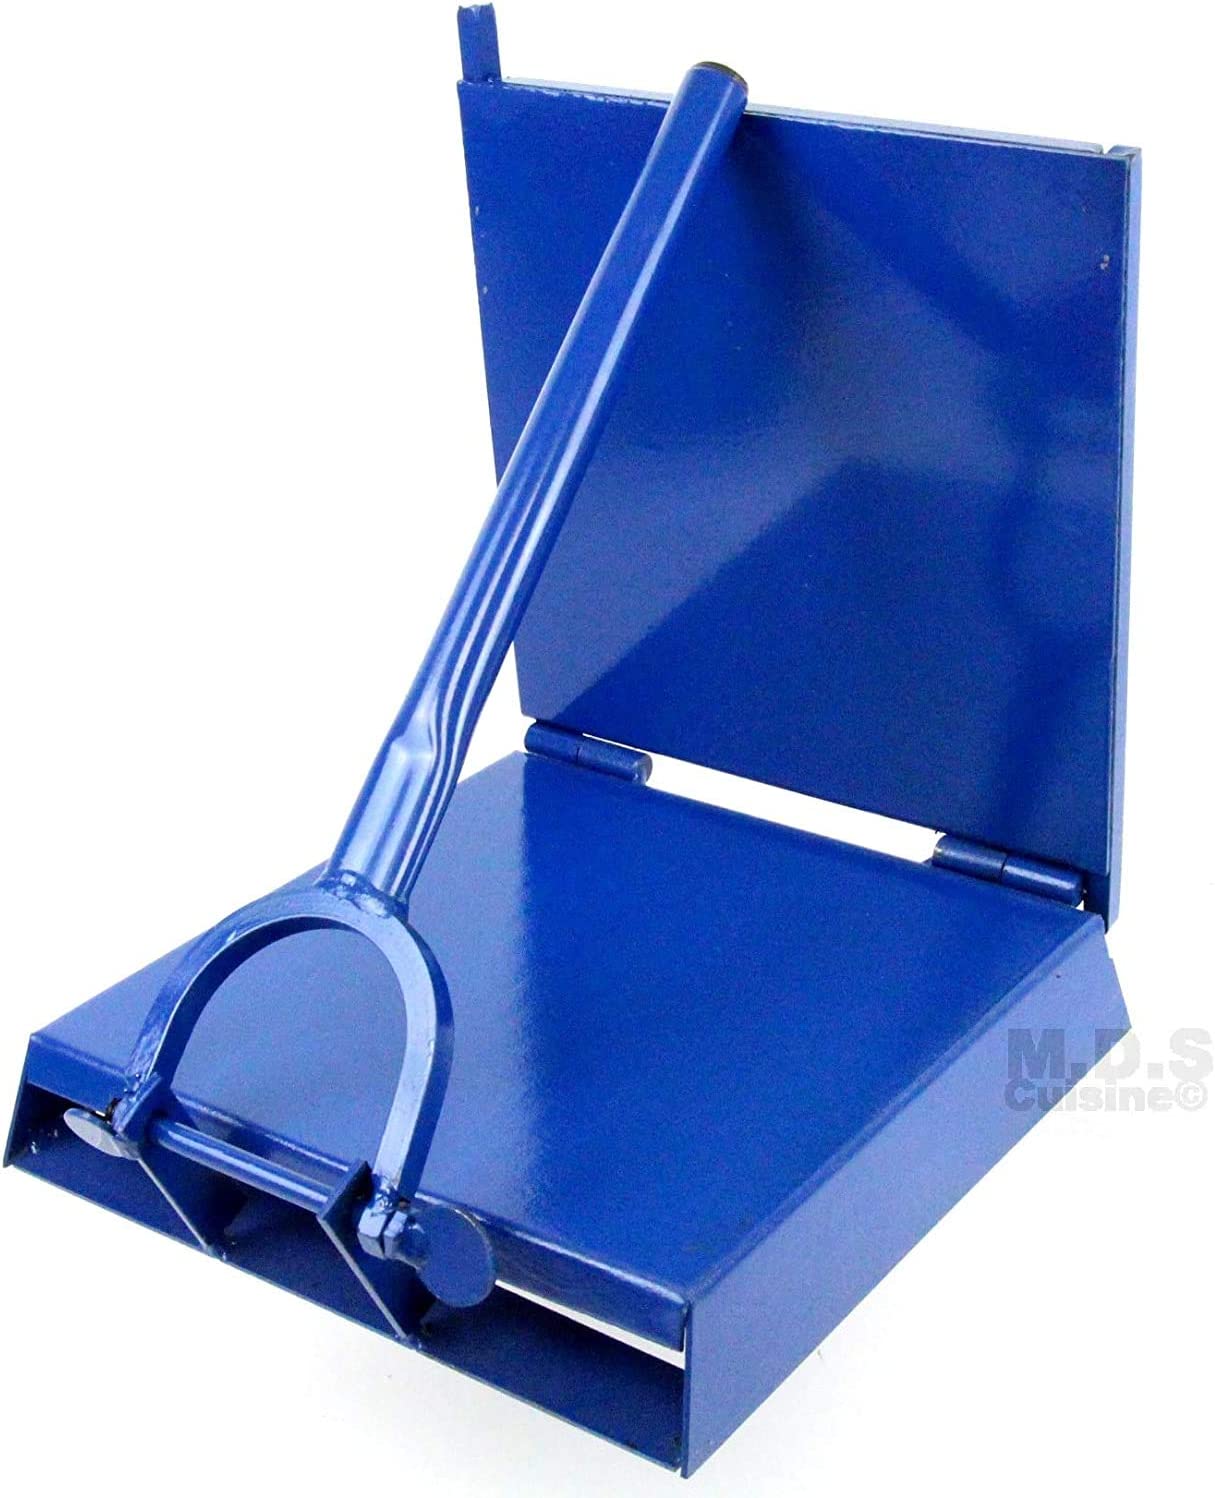 12" x 12" Blue Square Manual Tortilla Press